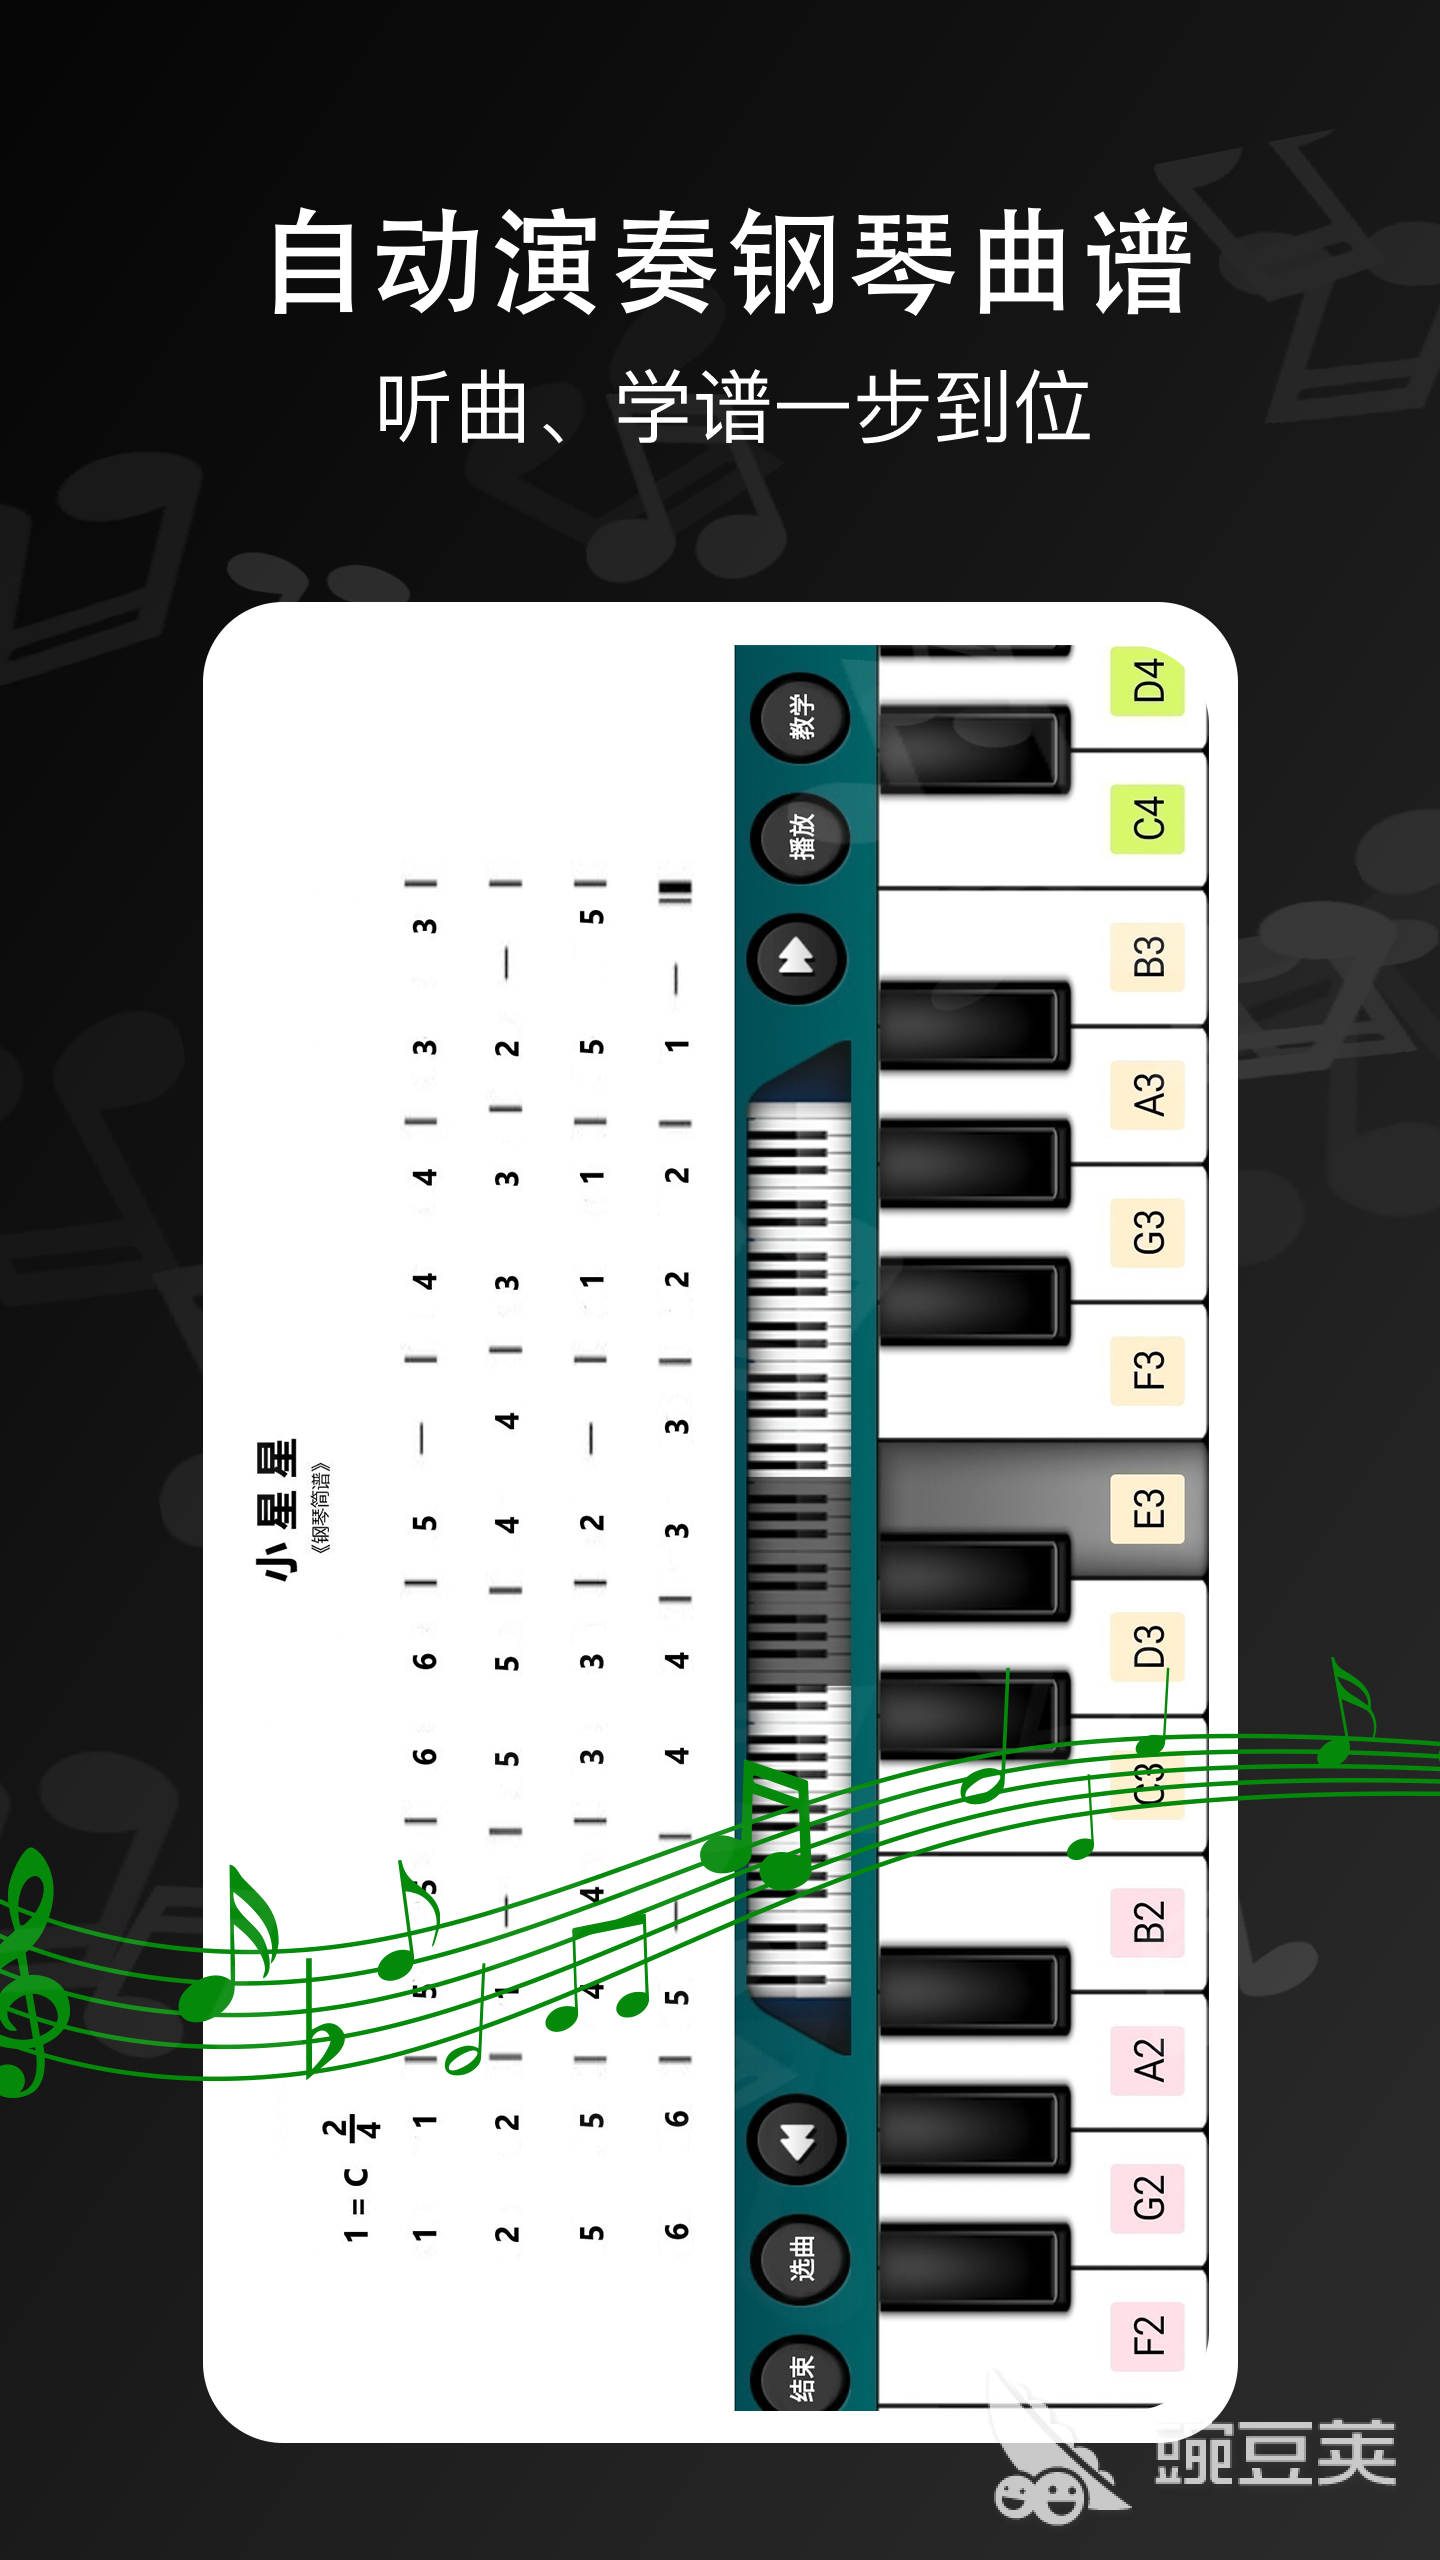 自动弹钢琴的软件有哪些 自动弹钢琴的软件分享